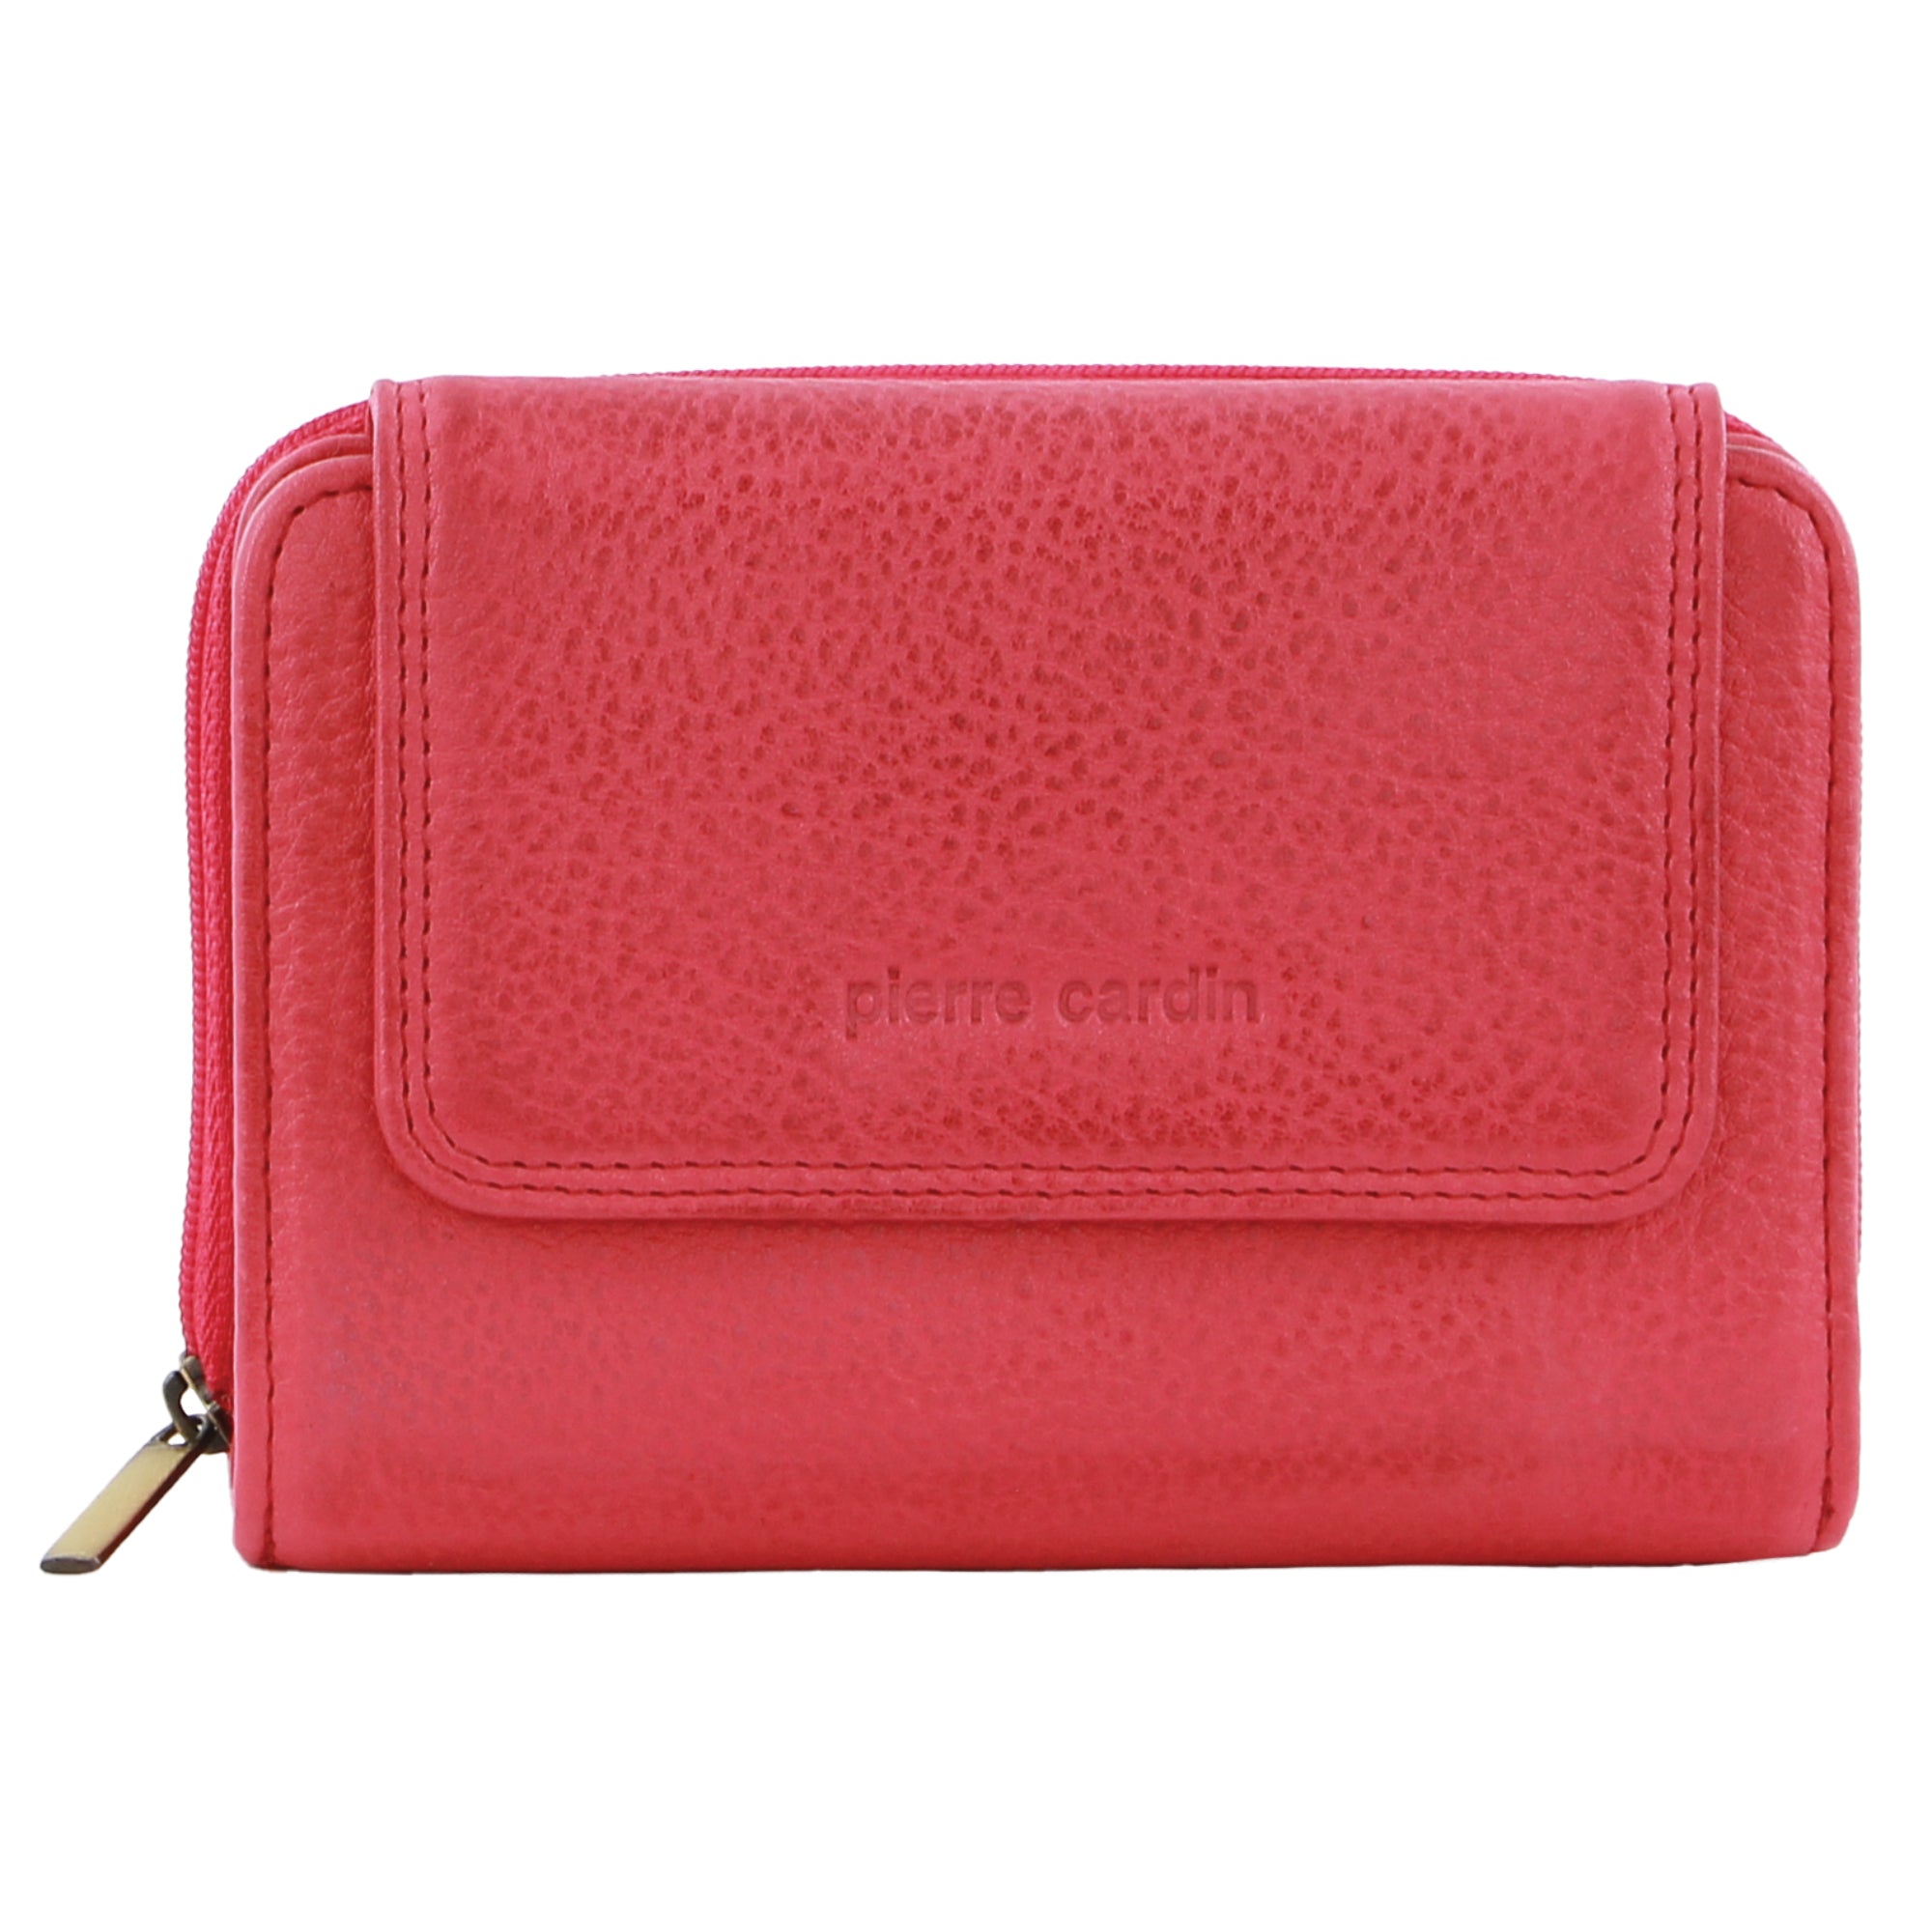 Pierre Cardin Women's Leather Compact Bi-Fold Tab Wallet in Aqua